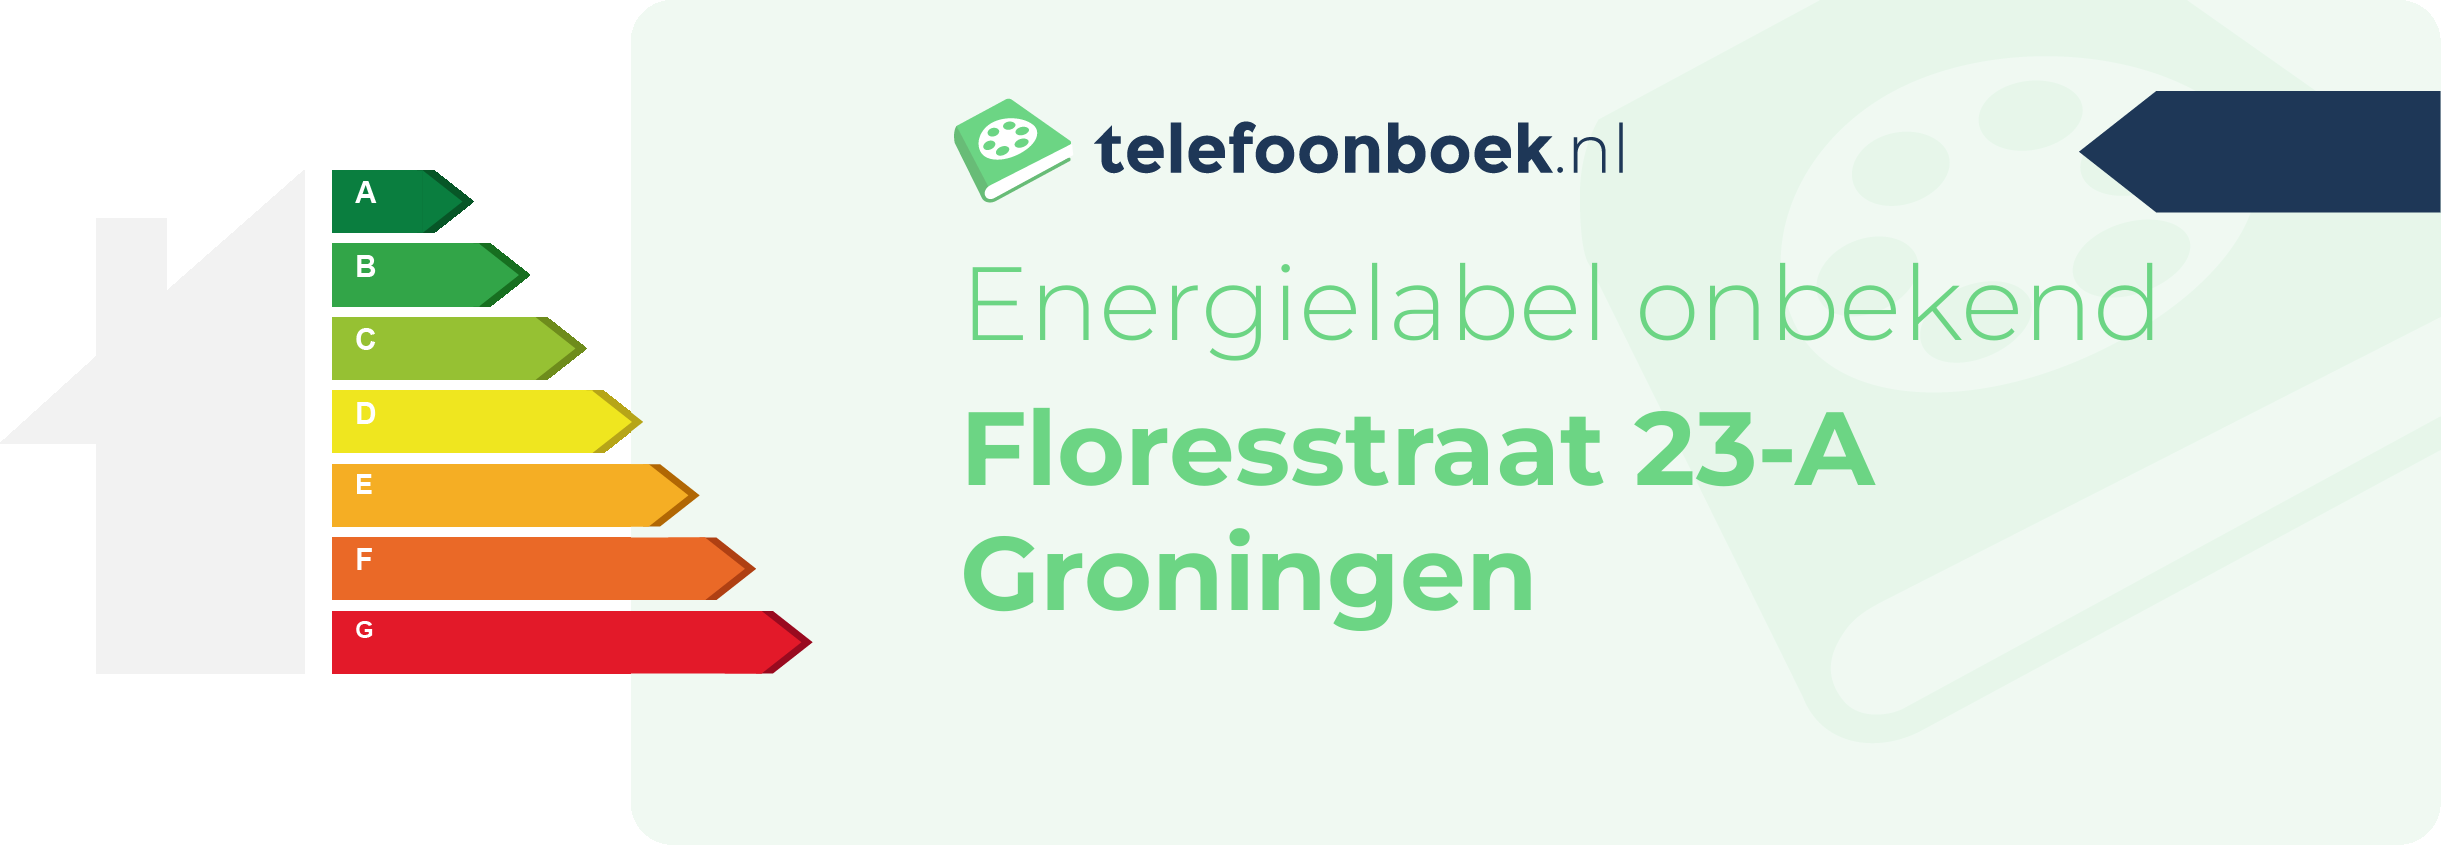 Energielabel Floresstraat 23-A Groningen